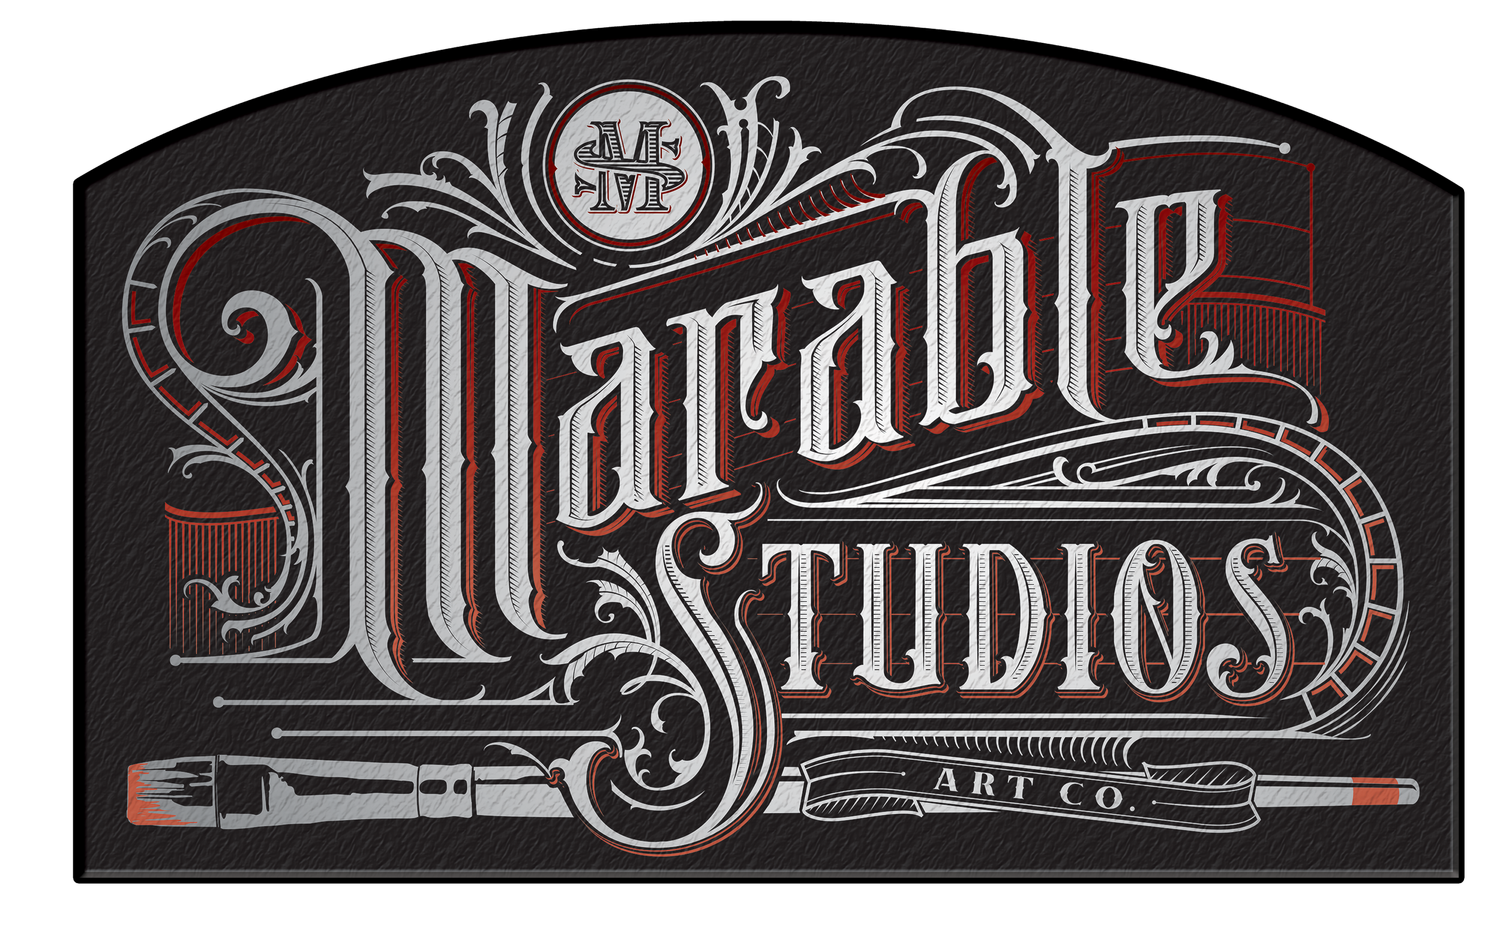 Marable Studios Art Co.